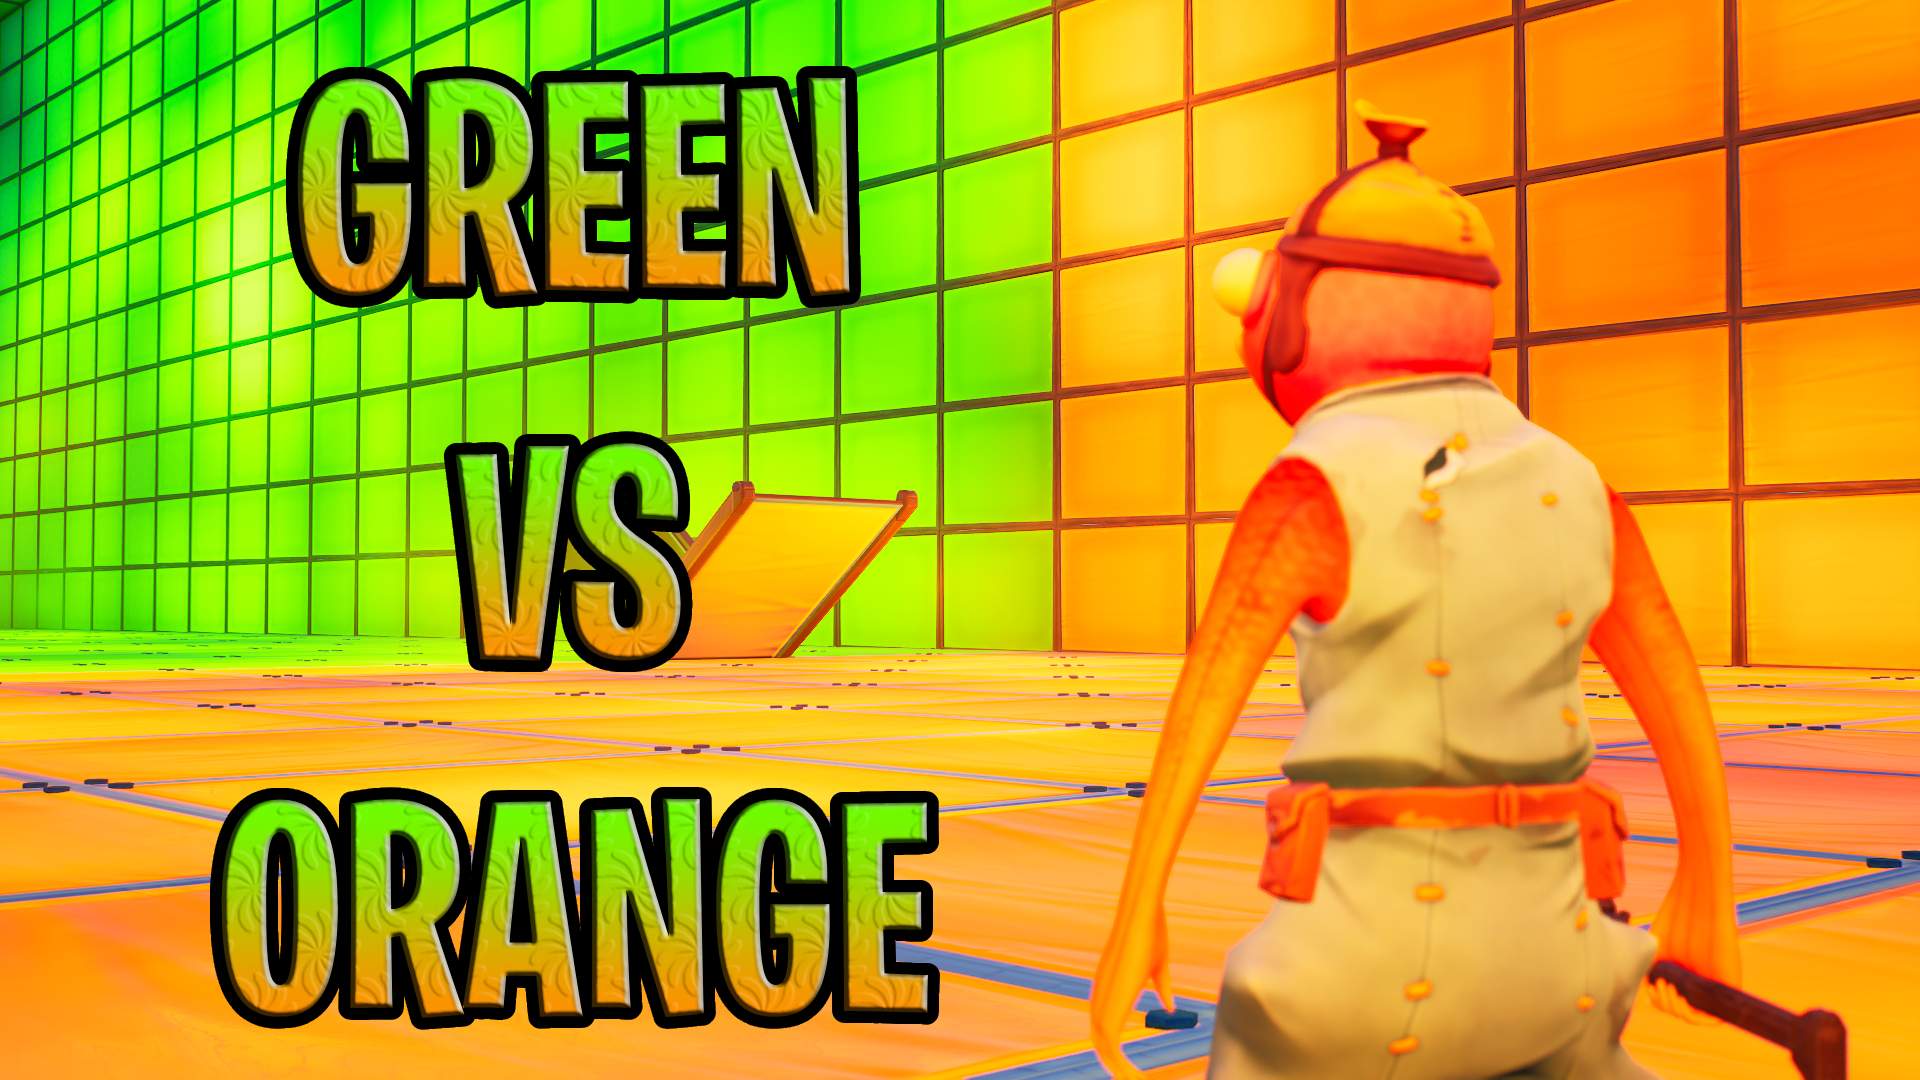 GREEN VS ORANGE image 2